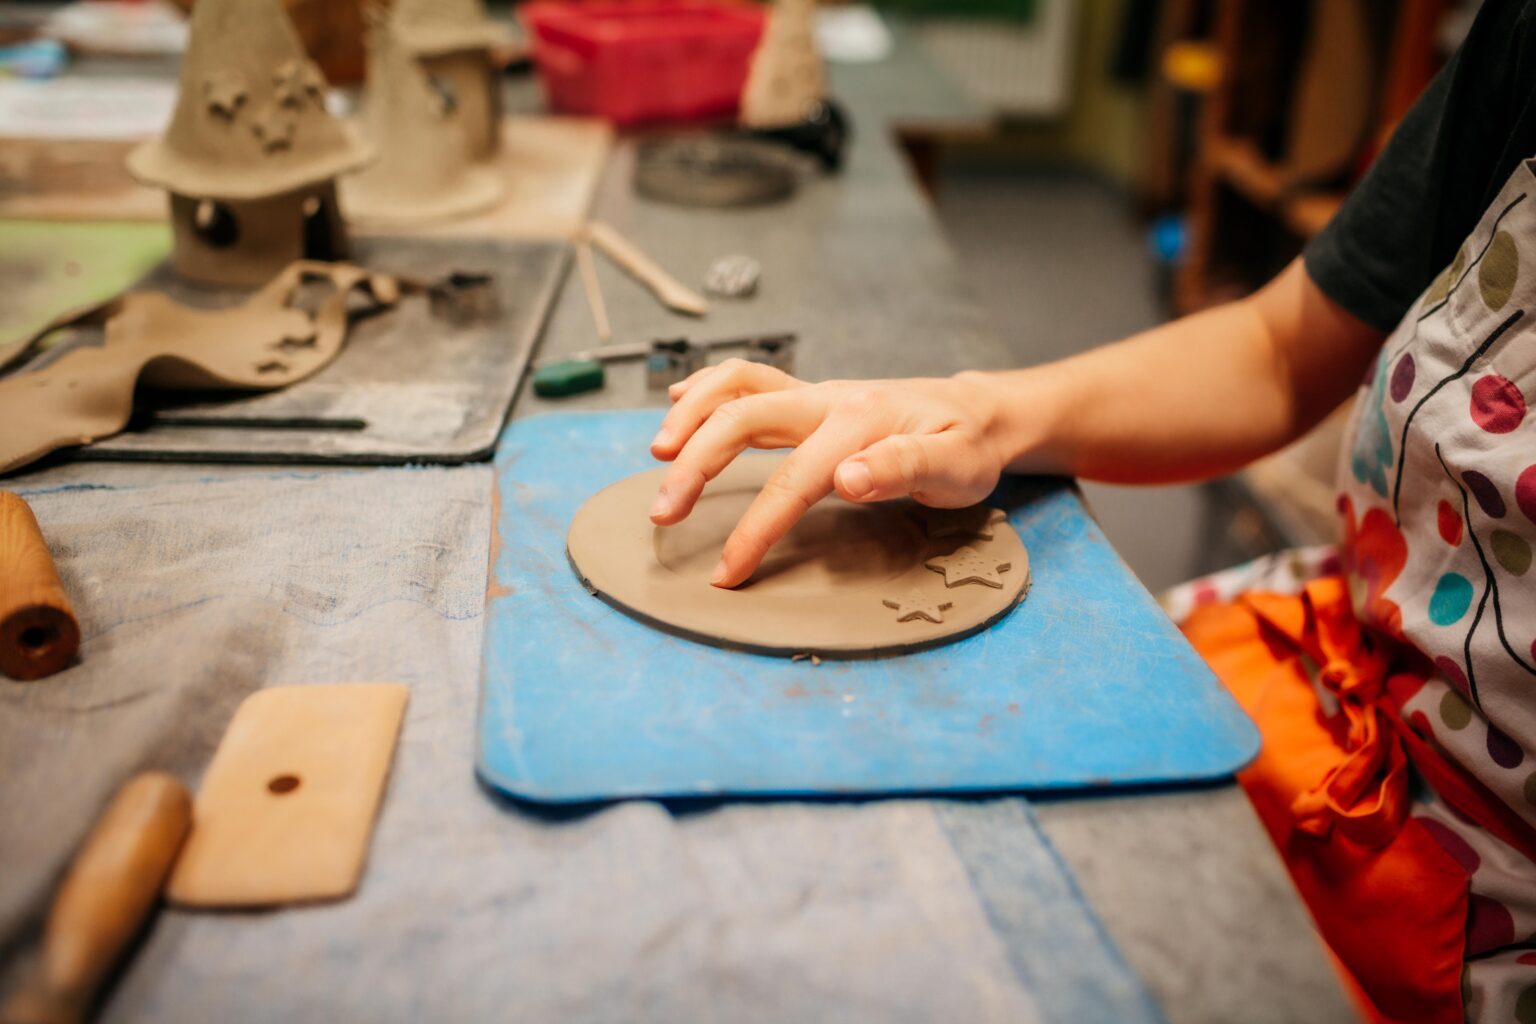 Tworzenie talerza w glinie. Pracownia ceramiczna prowadzona przez Warsztaty terapii zajęciowej „Ostoja” w Centrum Rehabilitacyjno- Terapeutycznym „Ostoja” we Wrocławiu